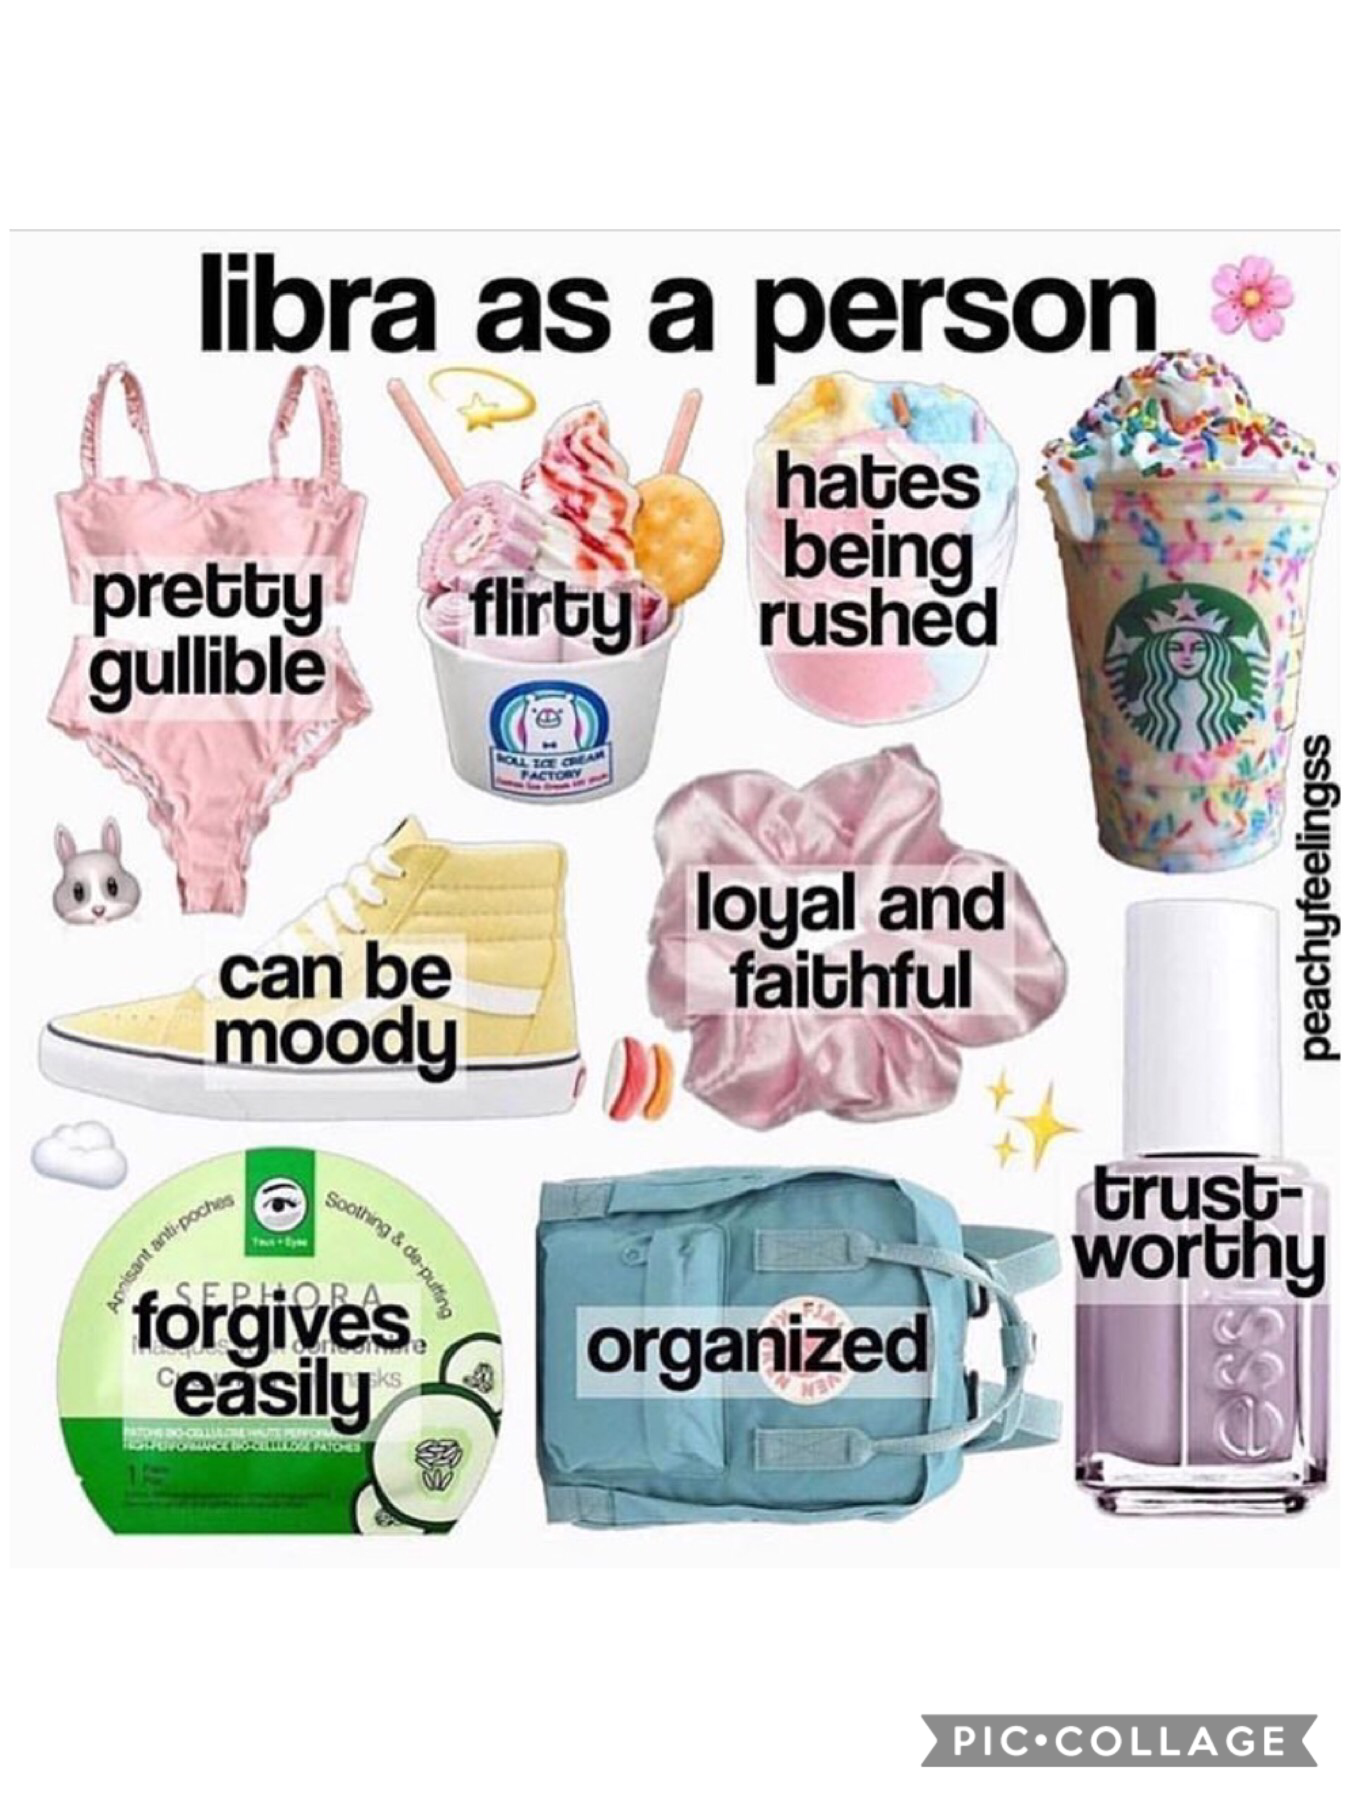 Libra as a person